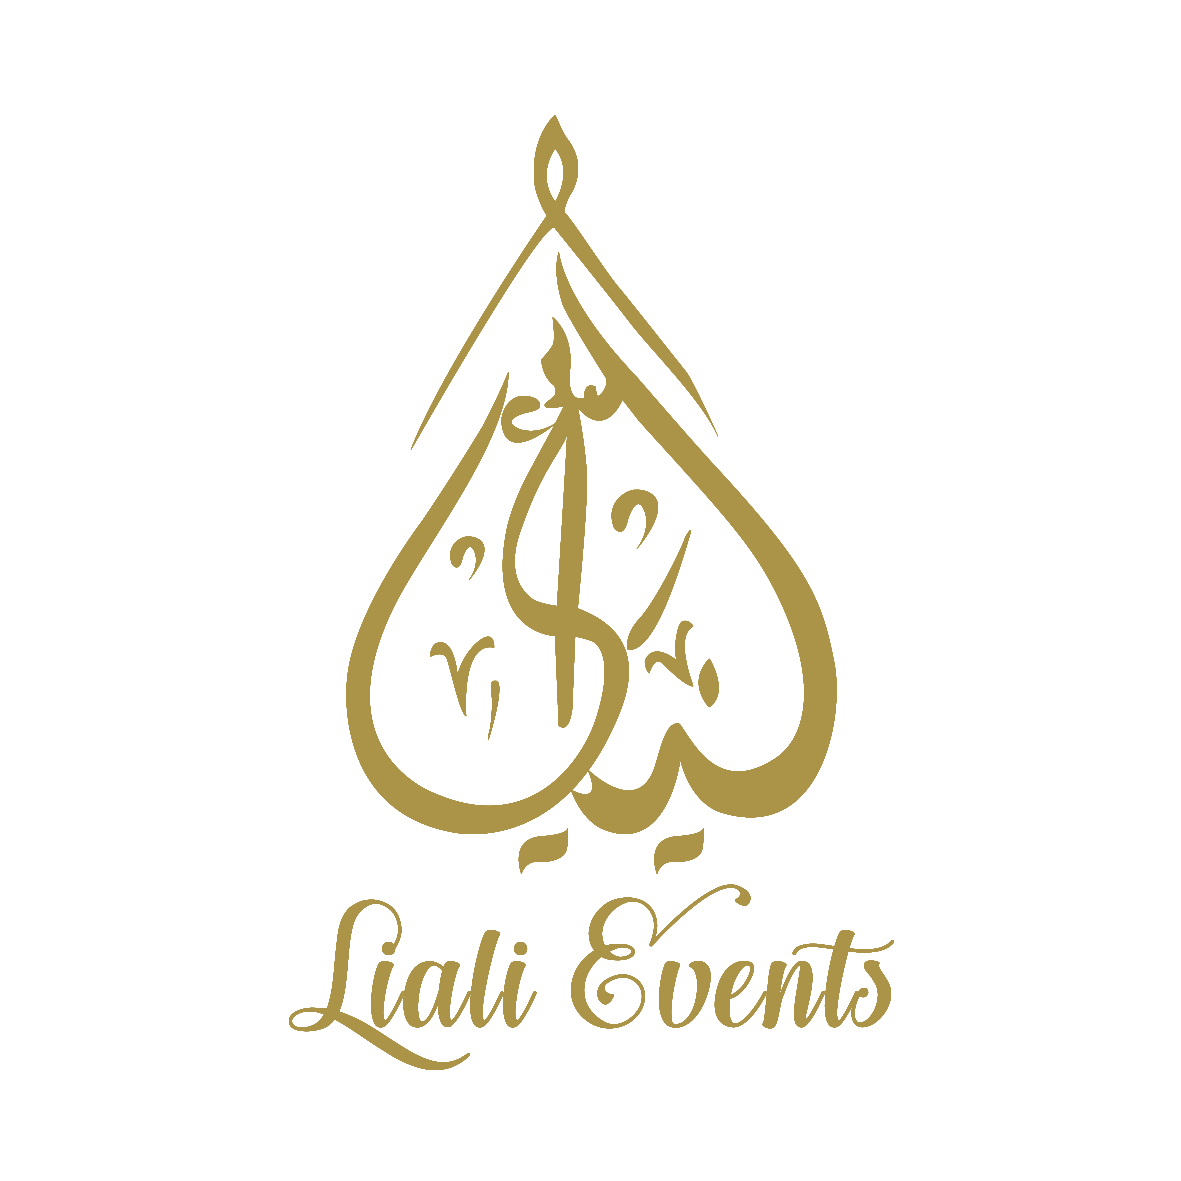 Liali Event Organization